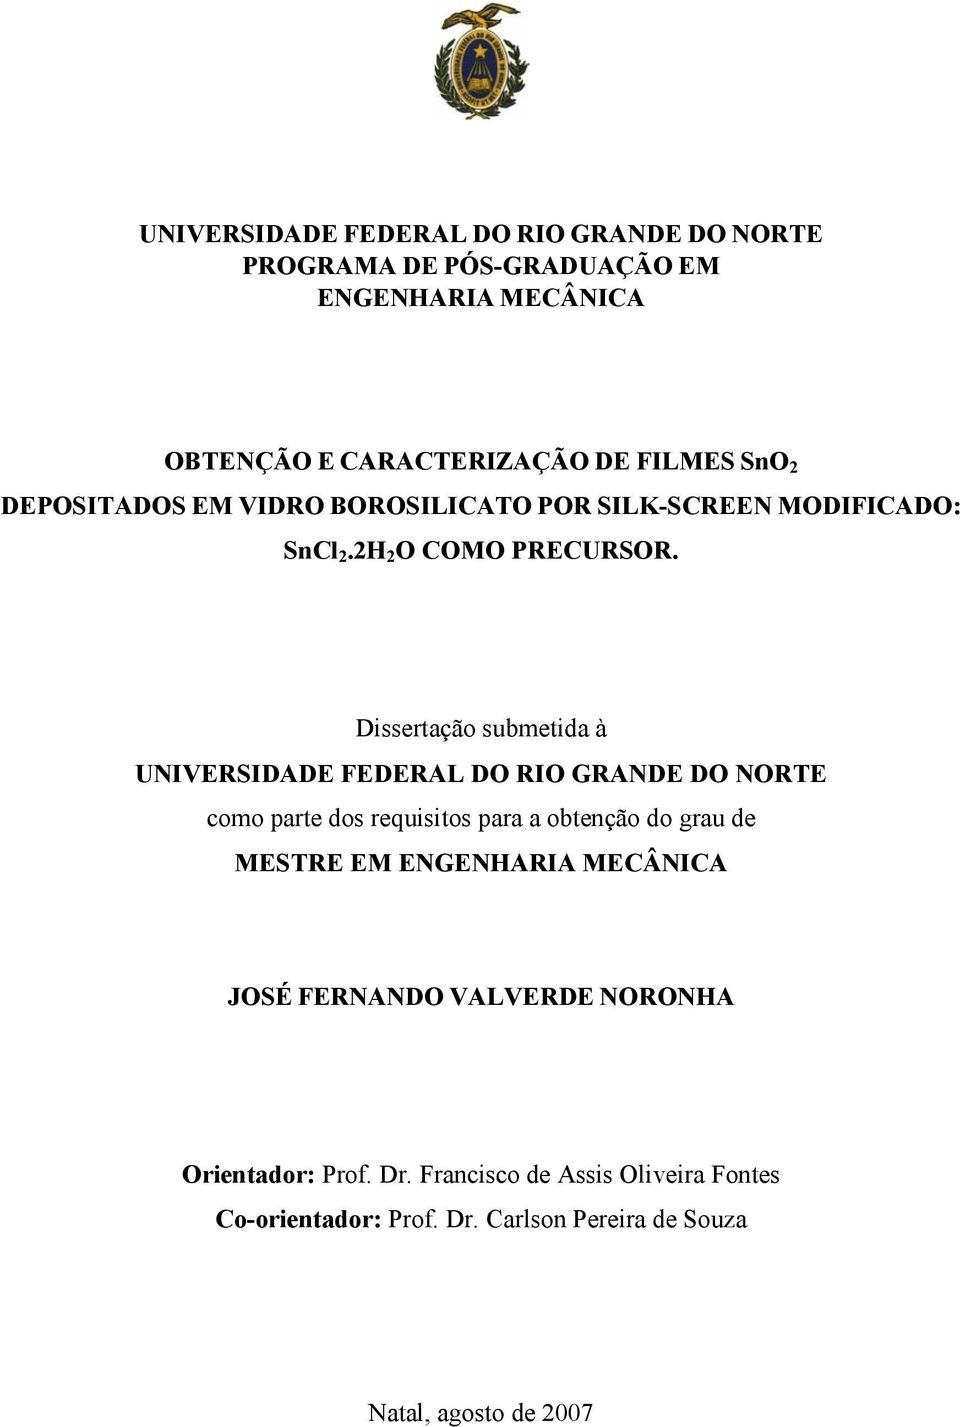 Dissertação submetida à UNIVERSIDADE FEDERAL DO RIO GRANDE DO NORTE como parte dos requisitos para a obtenção do grau de MESTRE EM